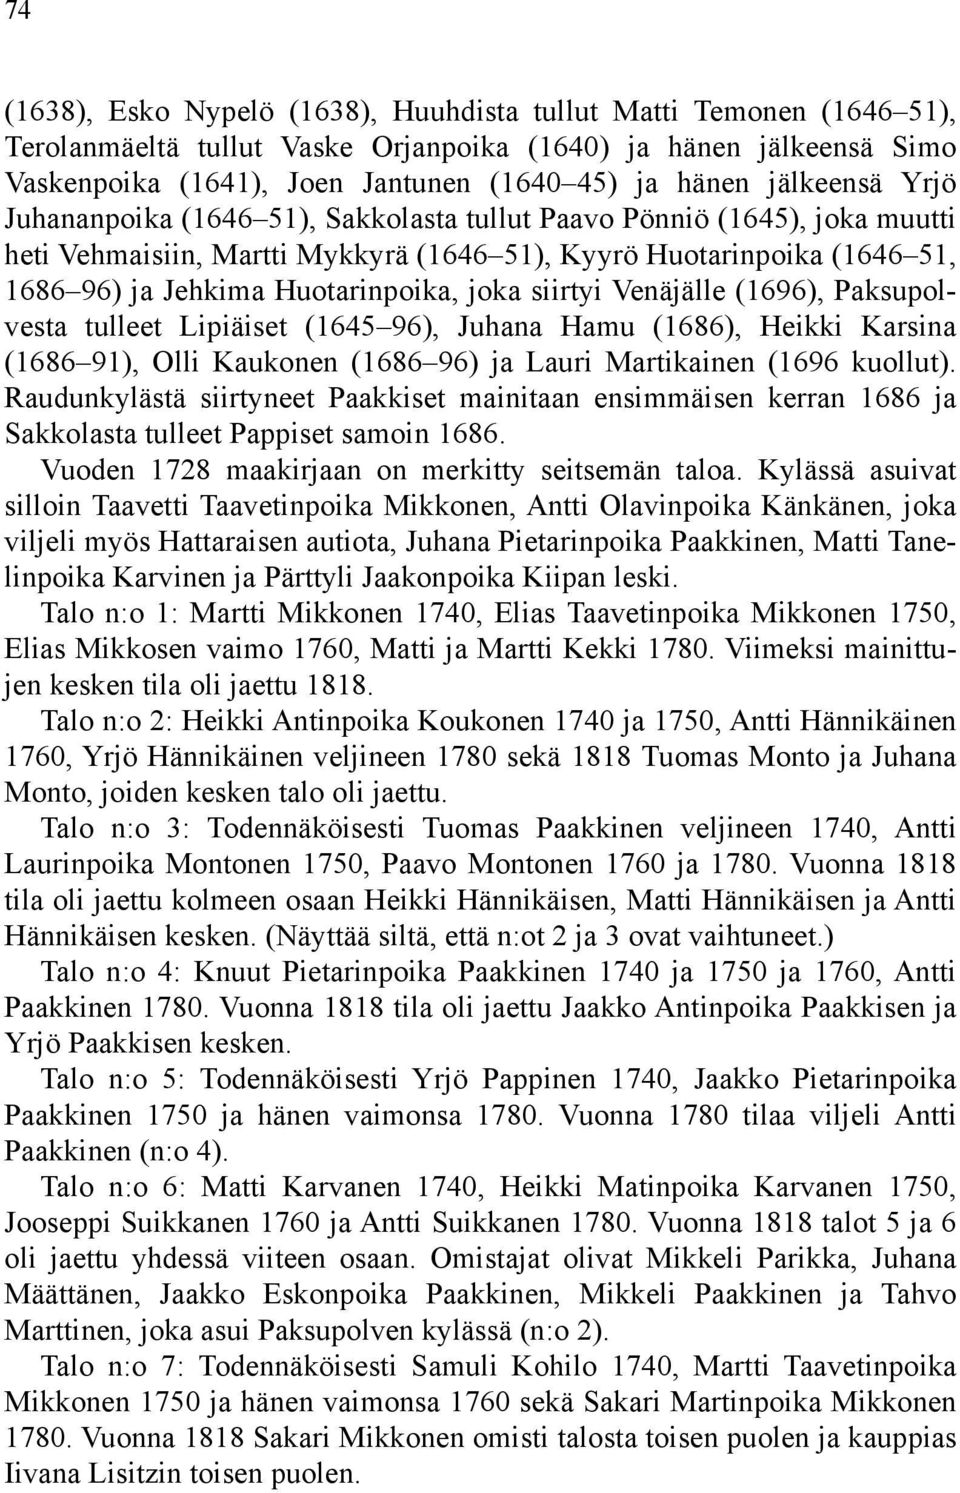 joka siirtyi Venäjälle (1696), Paksupolvesta tulleet Lipiäiset (1645 96), Juhana Hamu (1686), Heikki Karsina (1686 91), Olli Kaukonen (1686 96) ja Lauri Martikainen (1696 kuollut).